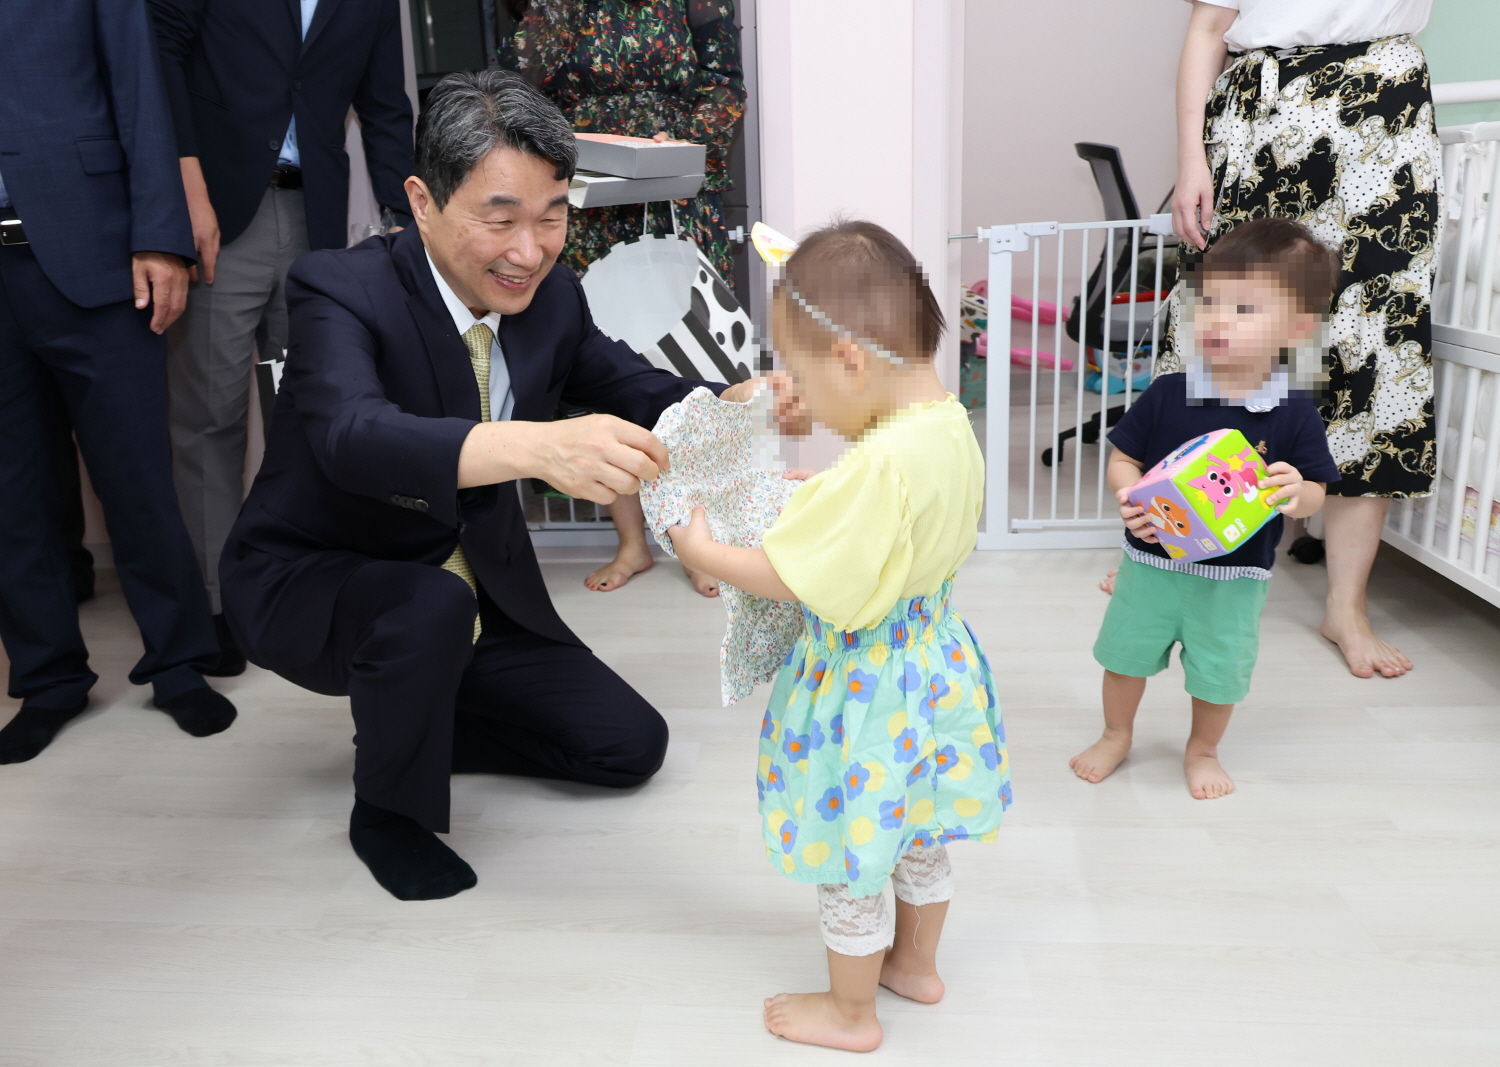 이주호 부총리 겸 교육부장관은 9월 20일(수), 추석 명절을 맞이하여 아동복지시설 이든아이빌을 방문했다.